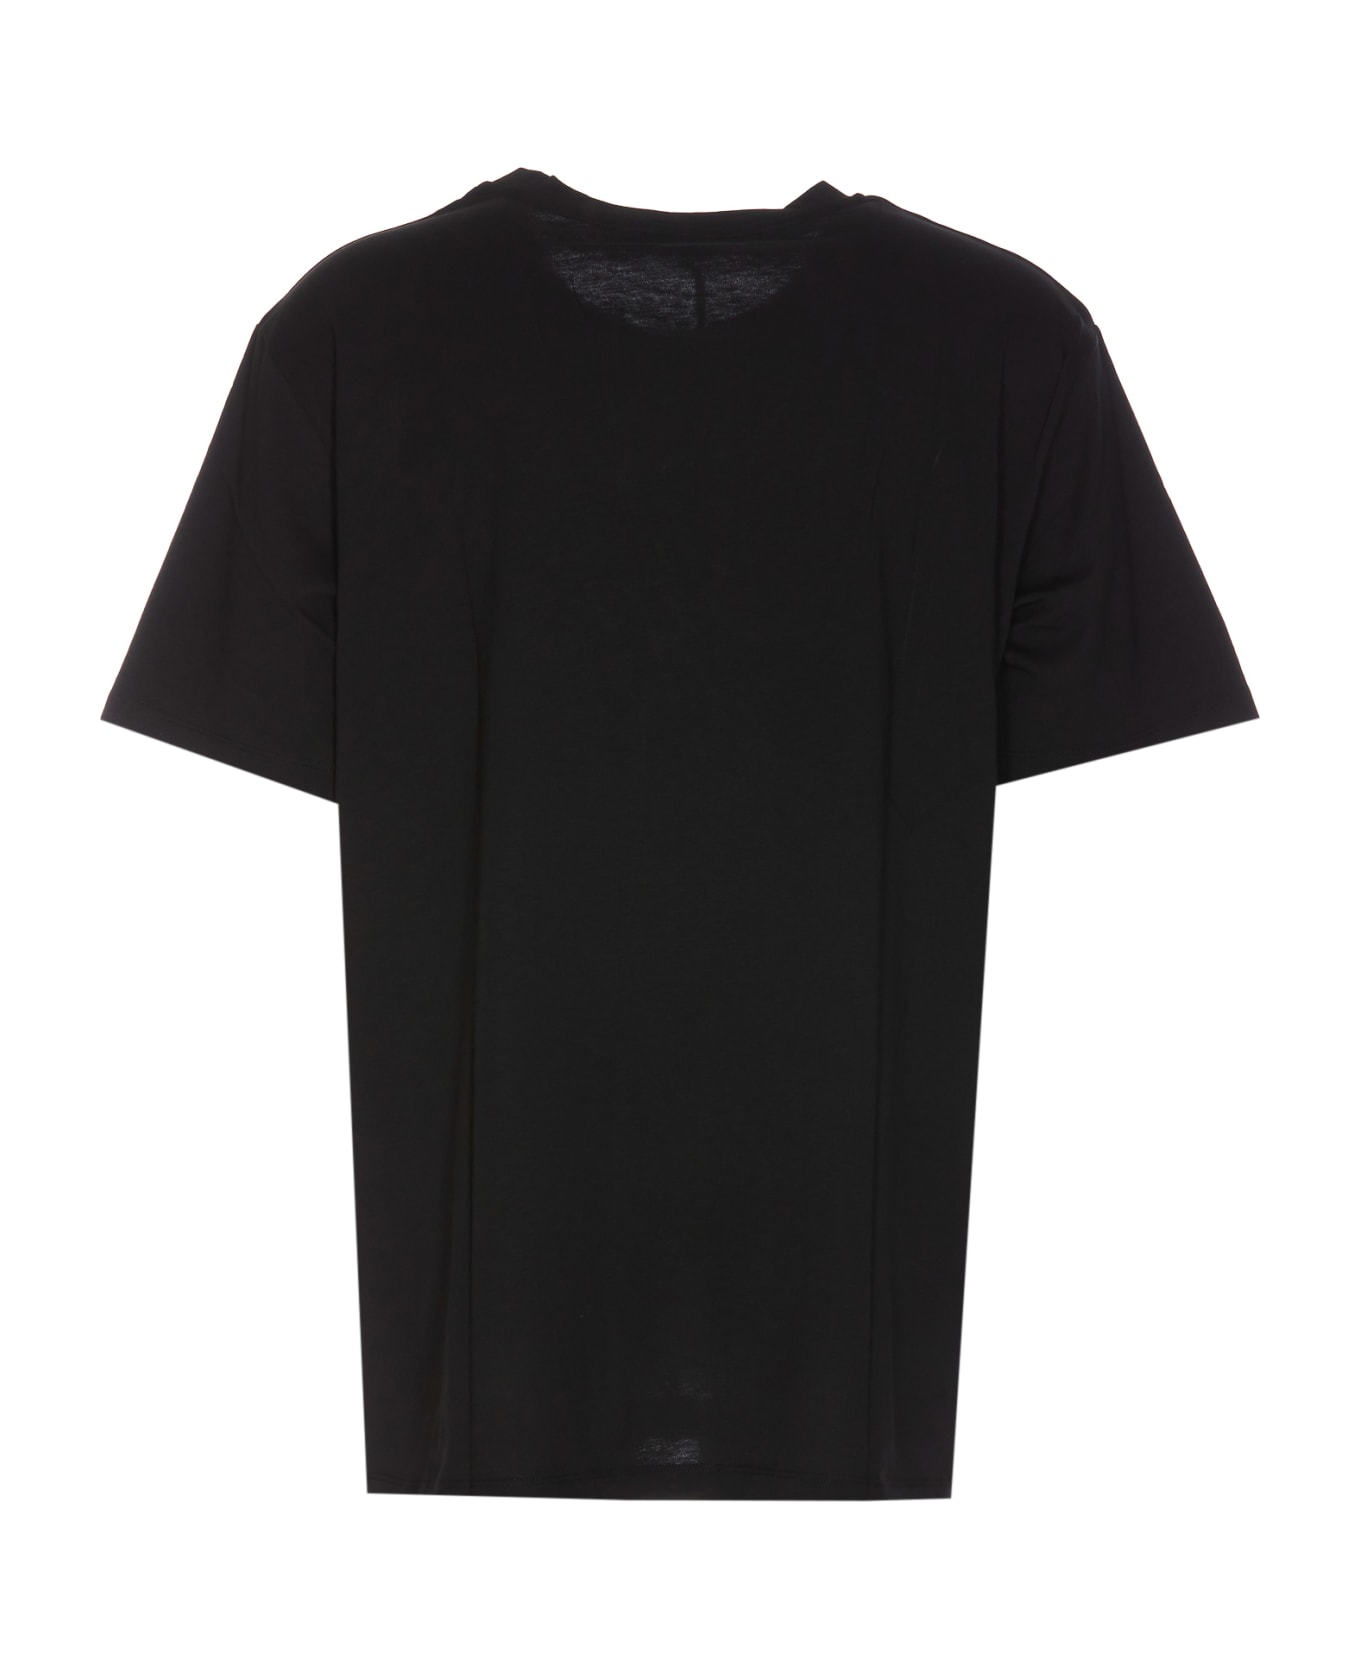 Balmain Velvet Logo T-shirt - Black